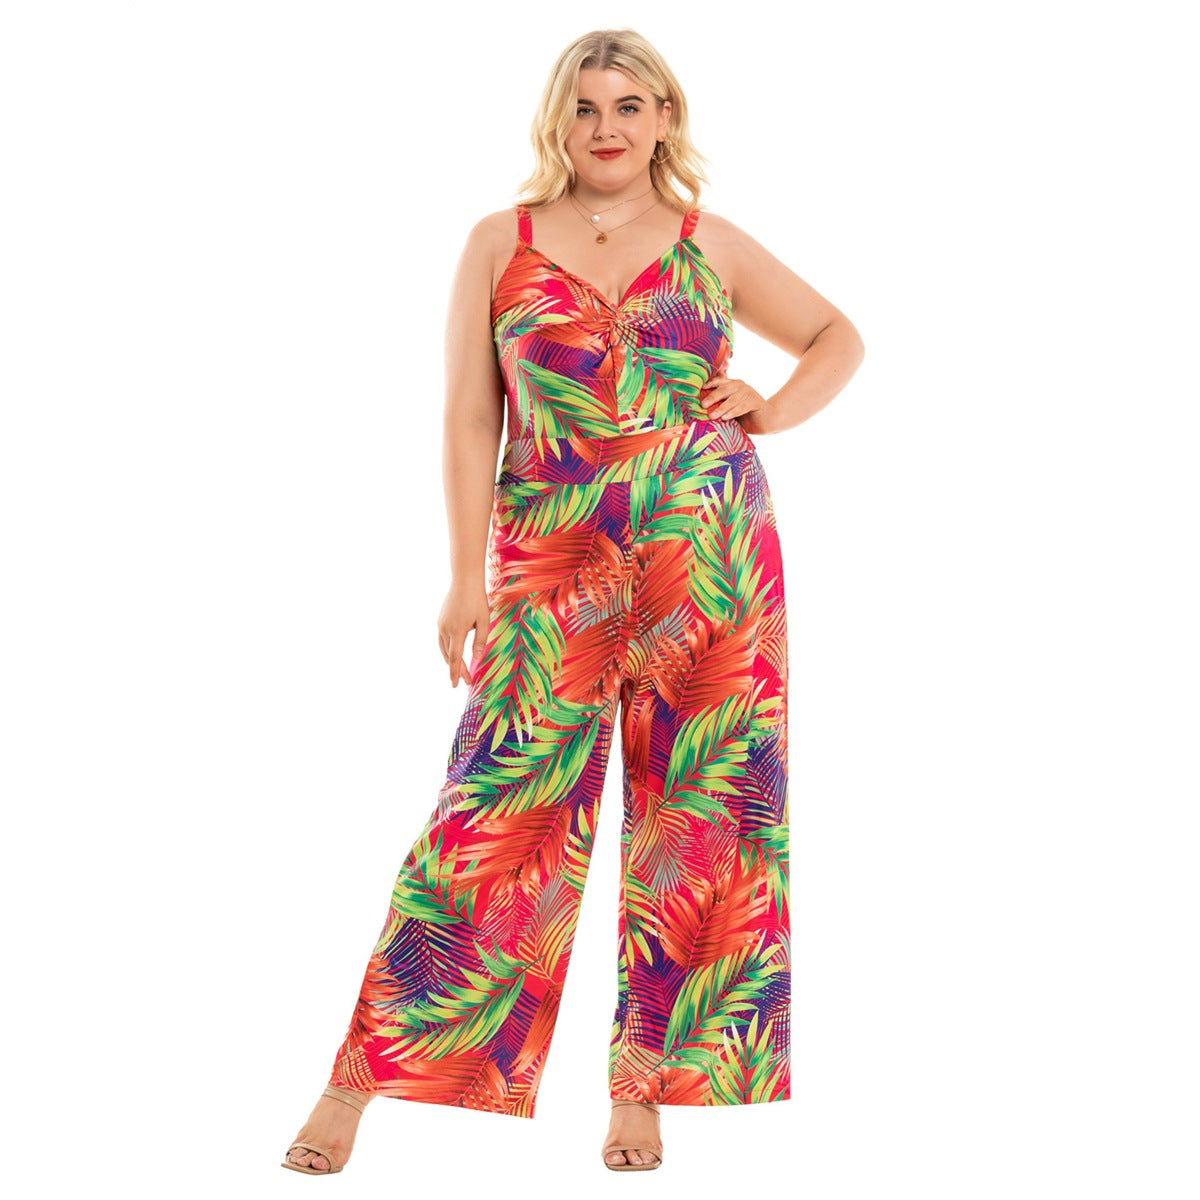 Curvy Women's Fashion Plus Size Suspenders Wide Leg Jumpsuit - Carvan Mart